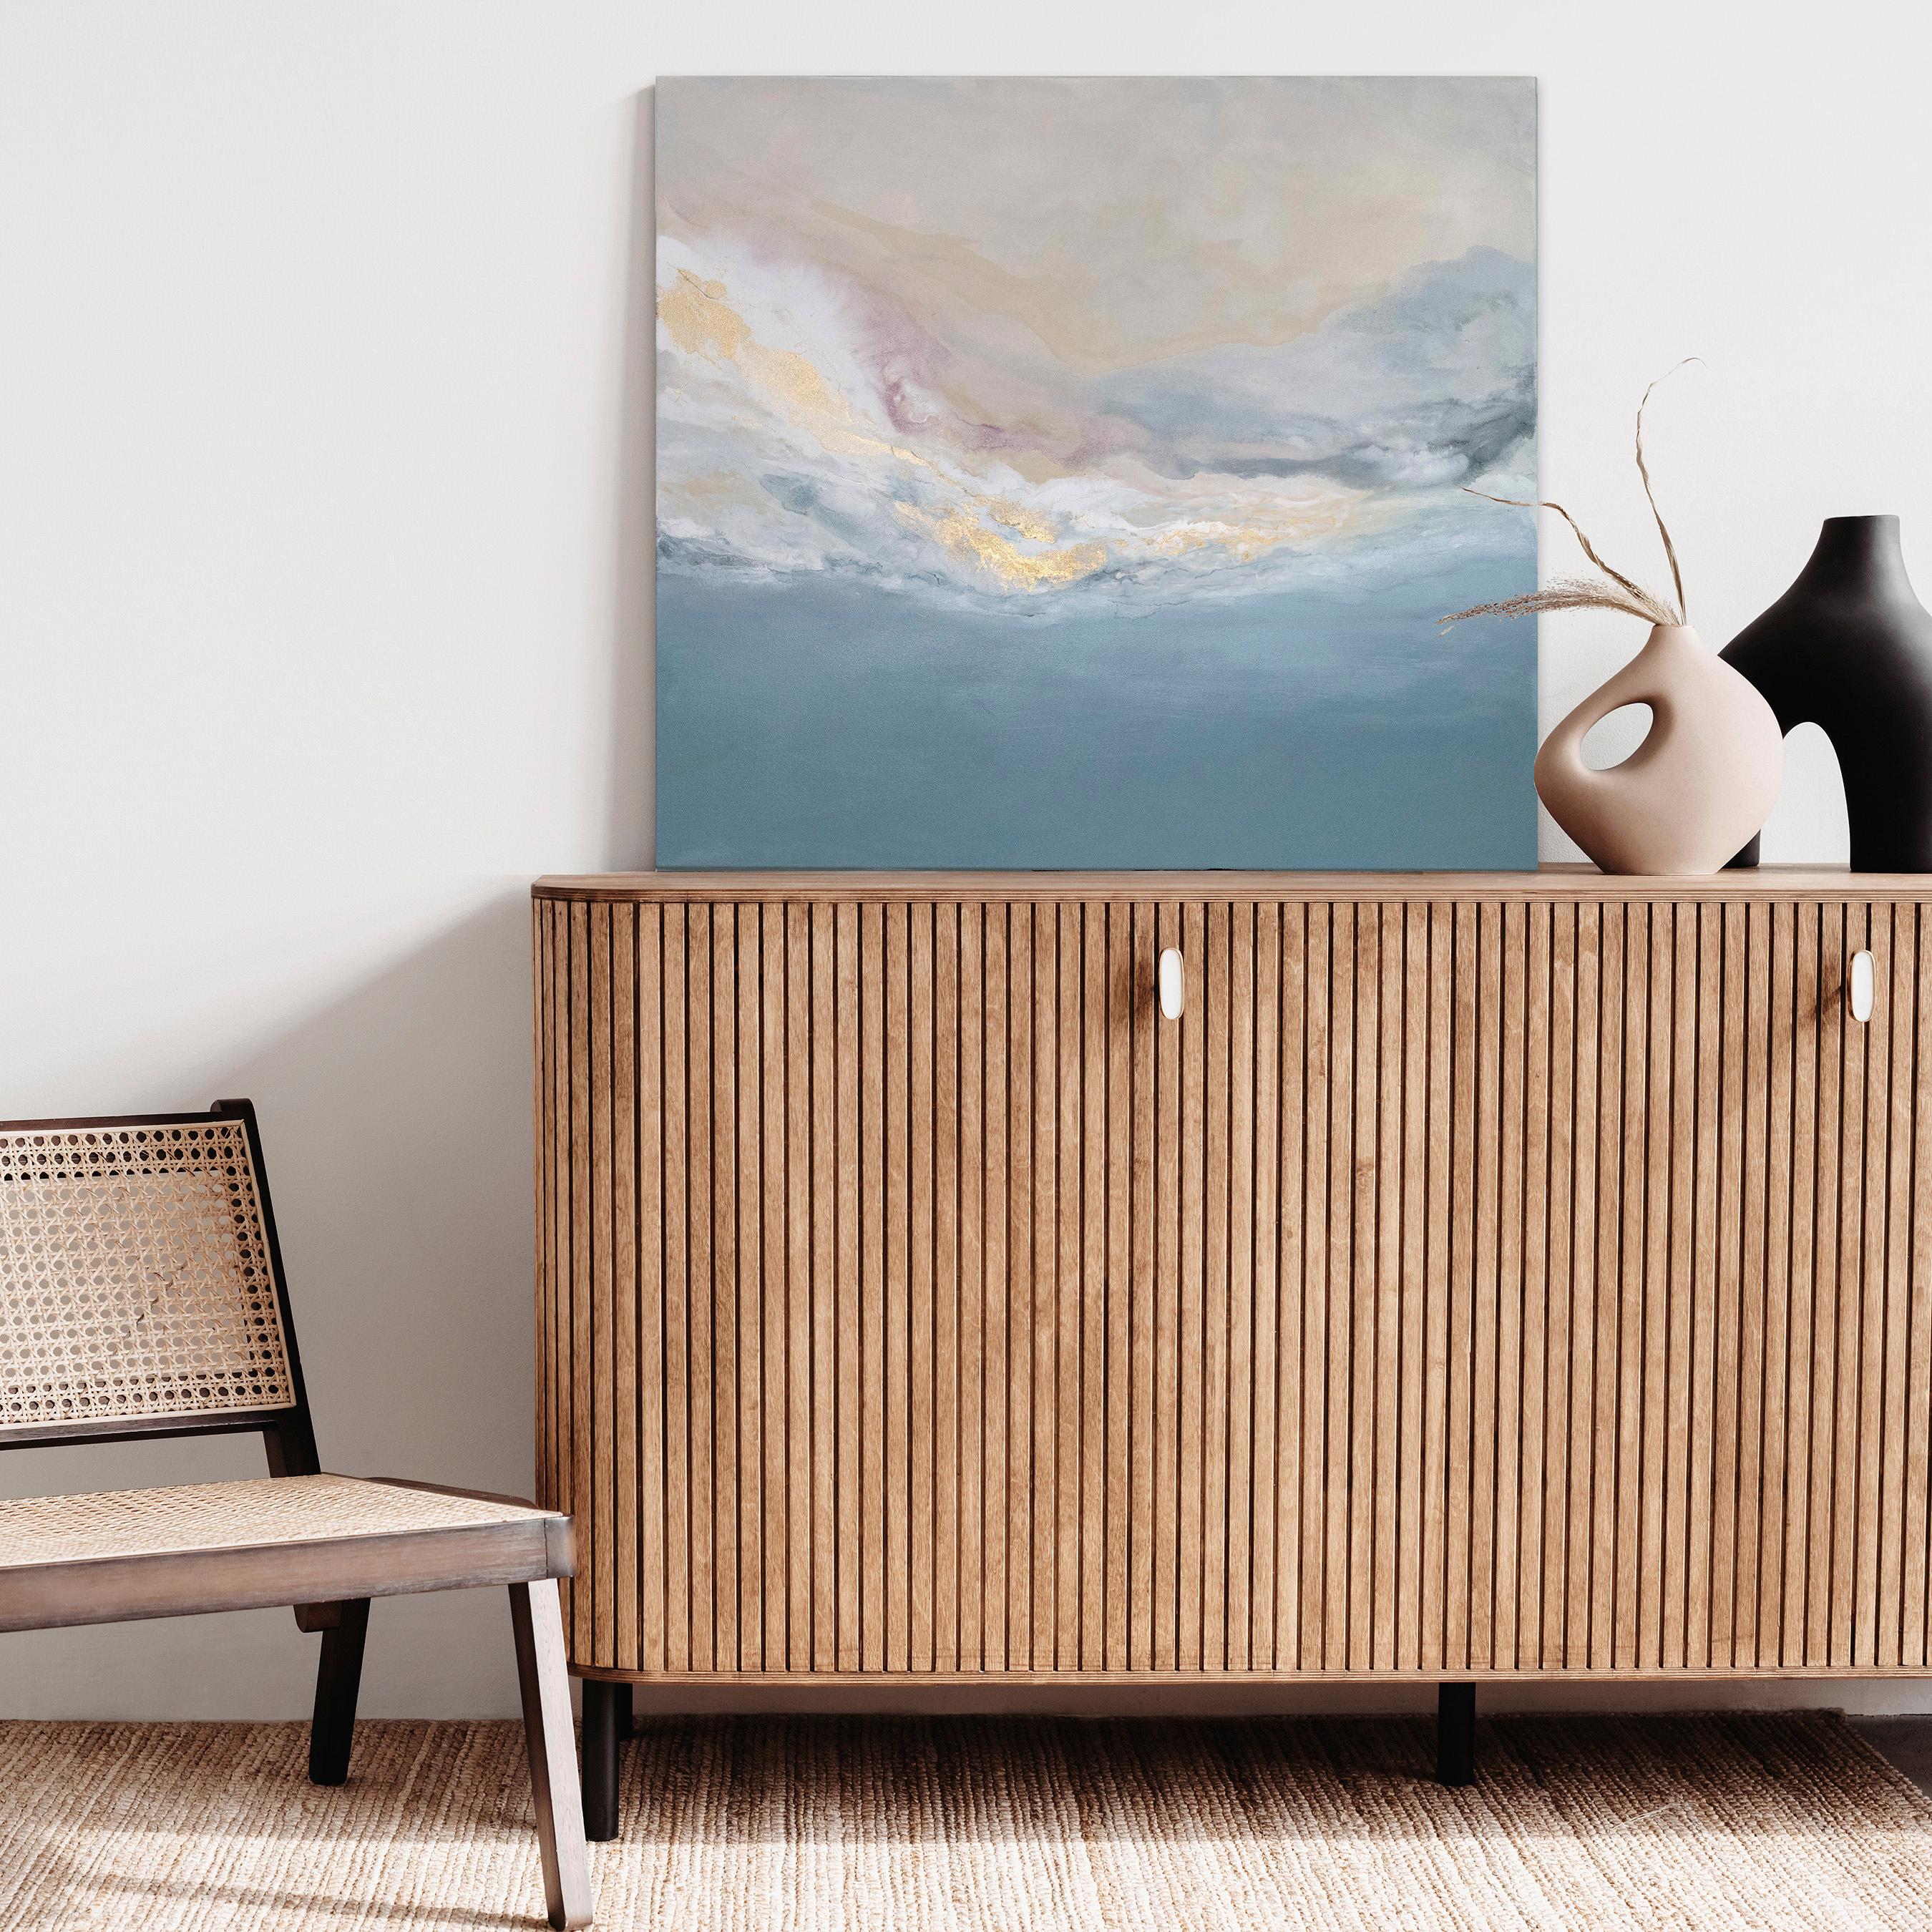 Dieses abstrakte Gemälde von Julia Contacessi zeichnet sich durch eine sanfte Küstenpalette mit Blautönen und Schichten aus erröteten, weißen und goldenen Metallic-Akzenten aus, die sich zu einer ausgewogenen Komposition zusammenfügen. Das Gemälde